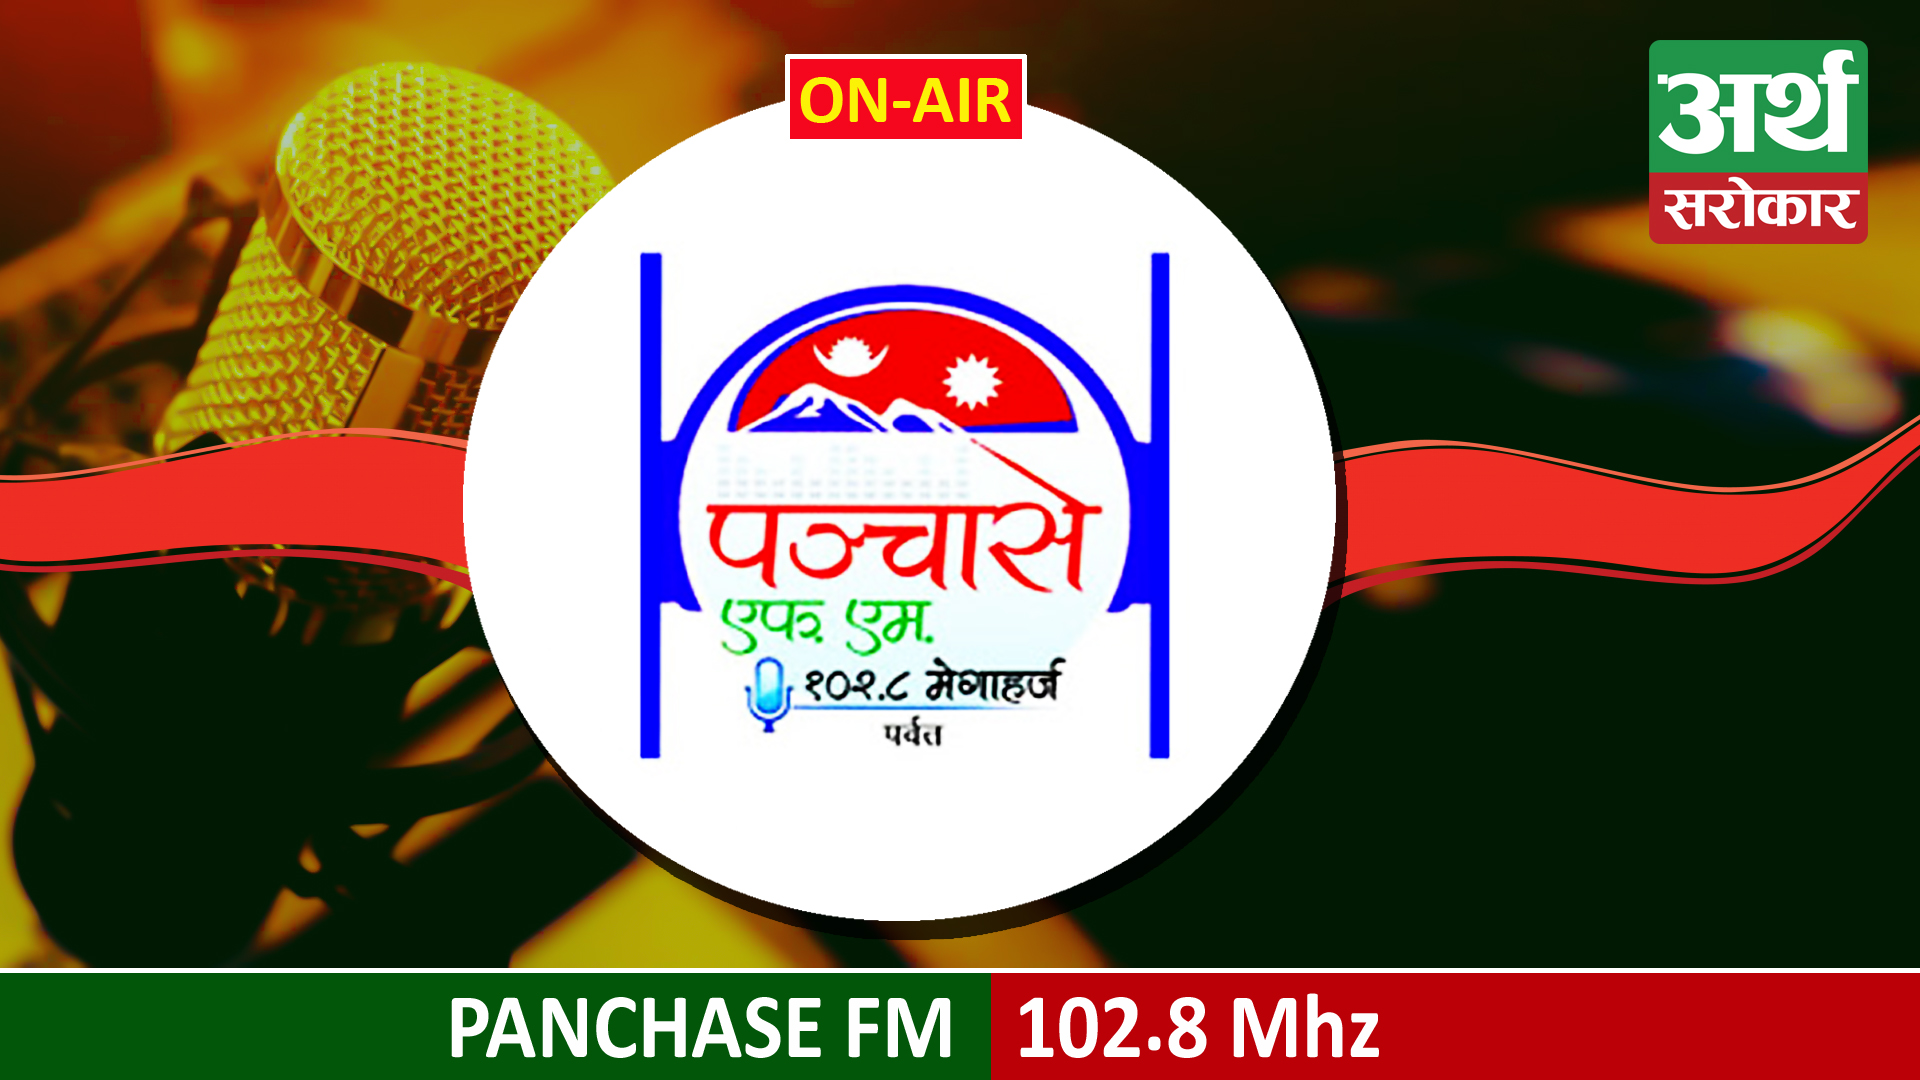 Panchase FM 102.8 MHz